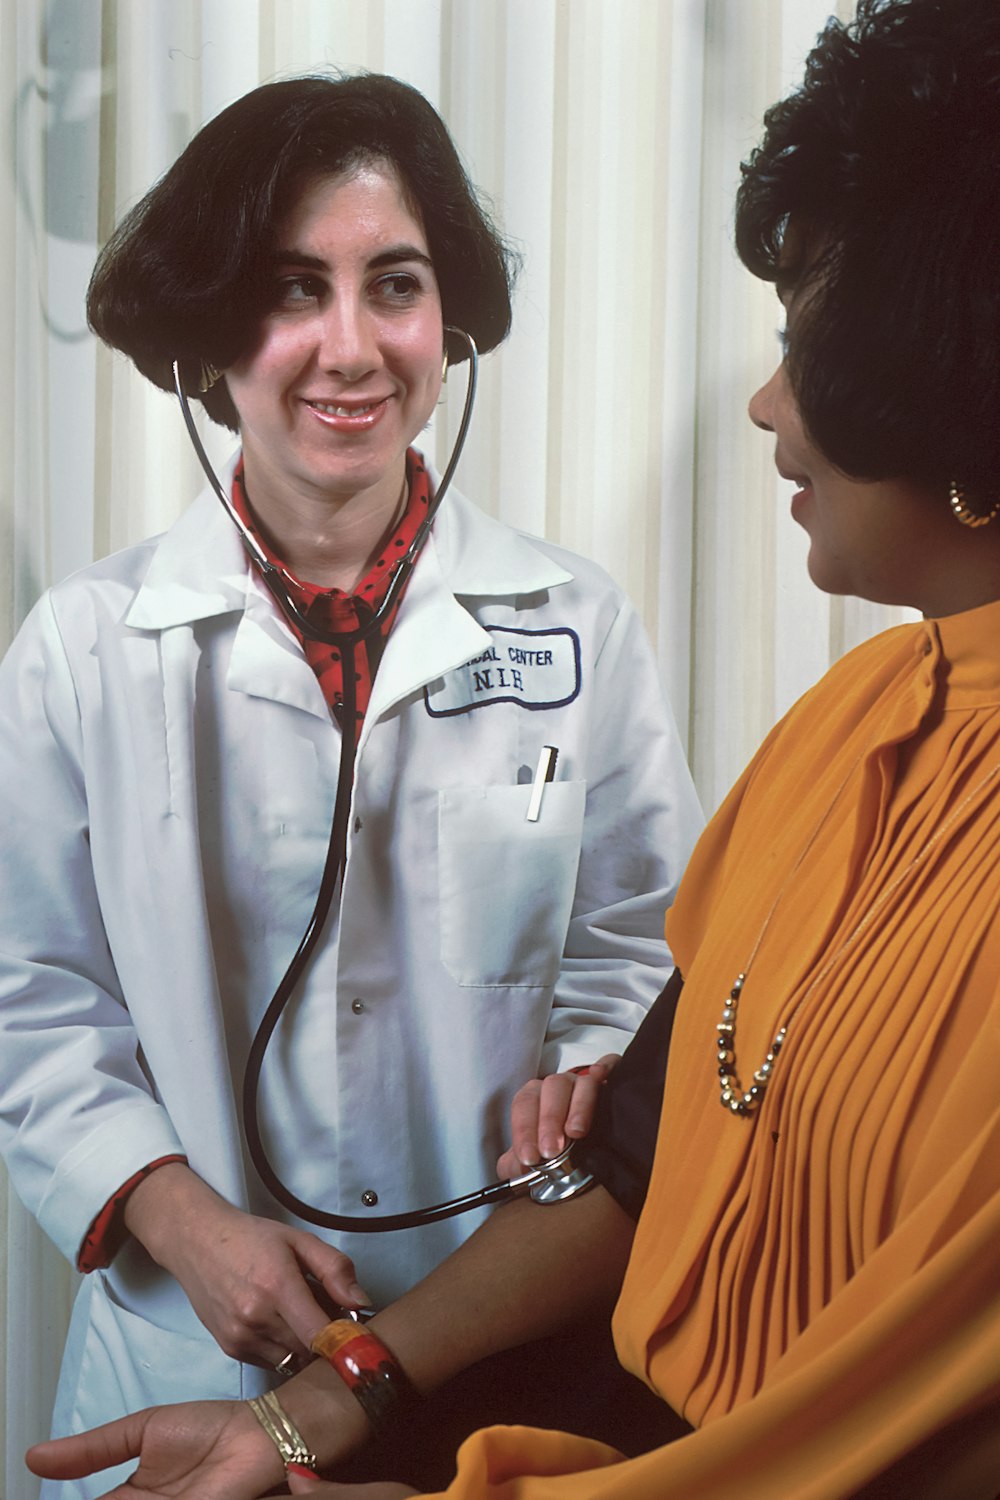 Eine Frau im Arztkittel spricht mit einer anderen Frau